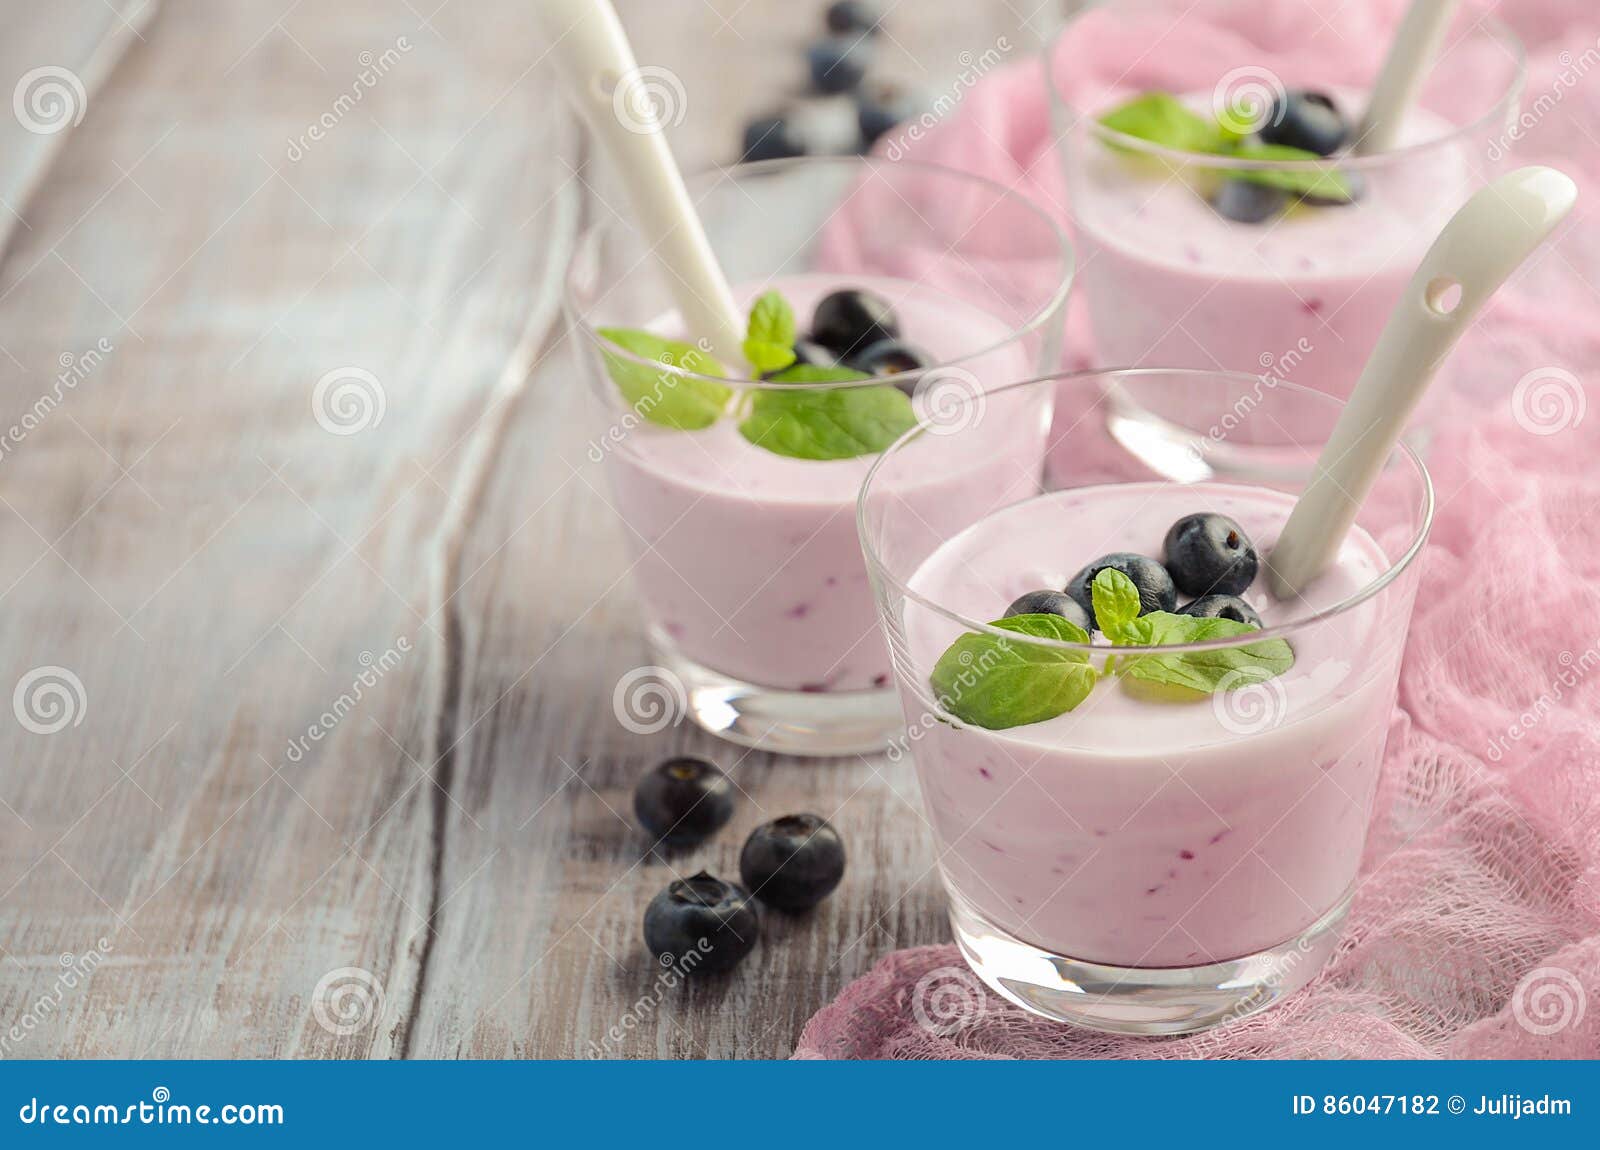 与路径的蓝莓酸奶 库存图片. 图片 包括有 背包, 快餐, 蓝莓, 酸奶, 食物, 对象, 餐巾, 发狂 - 52411851